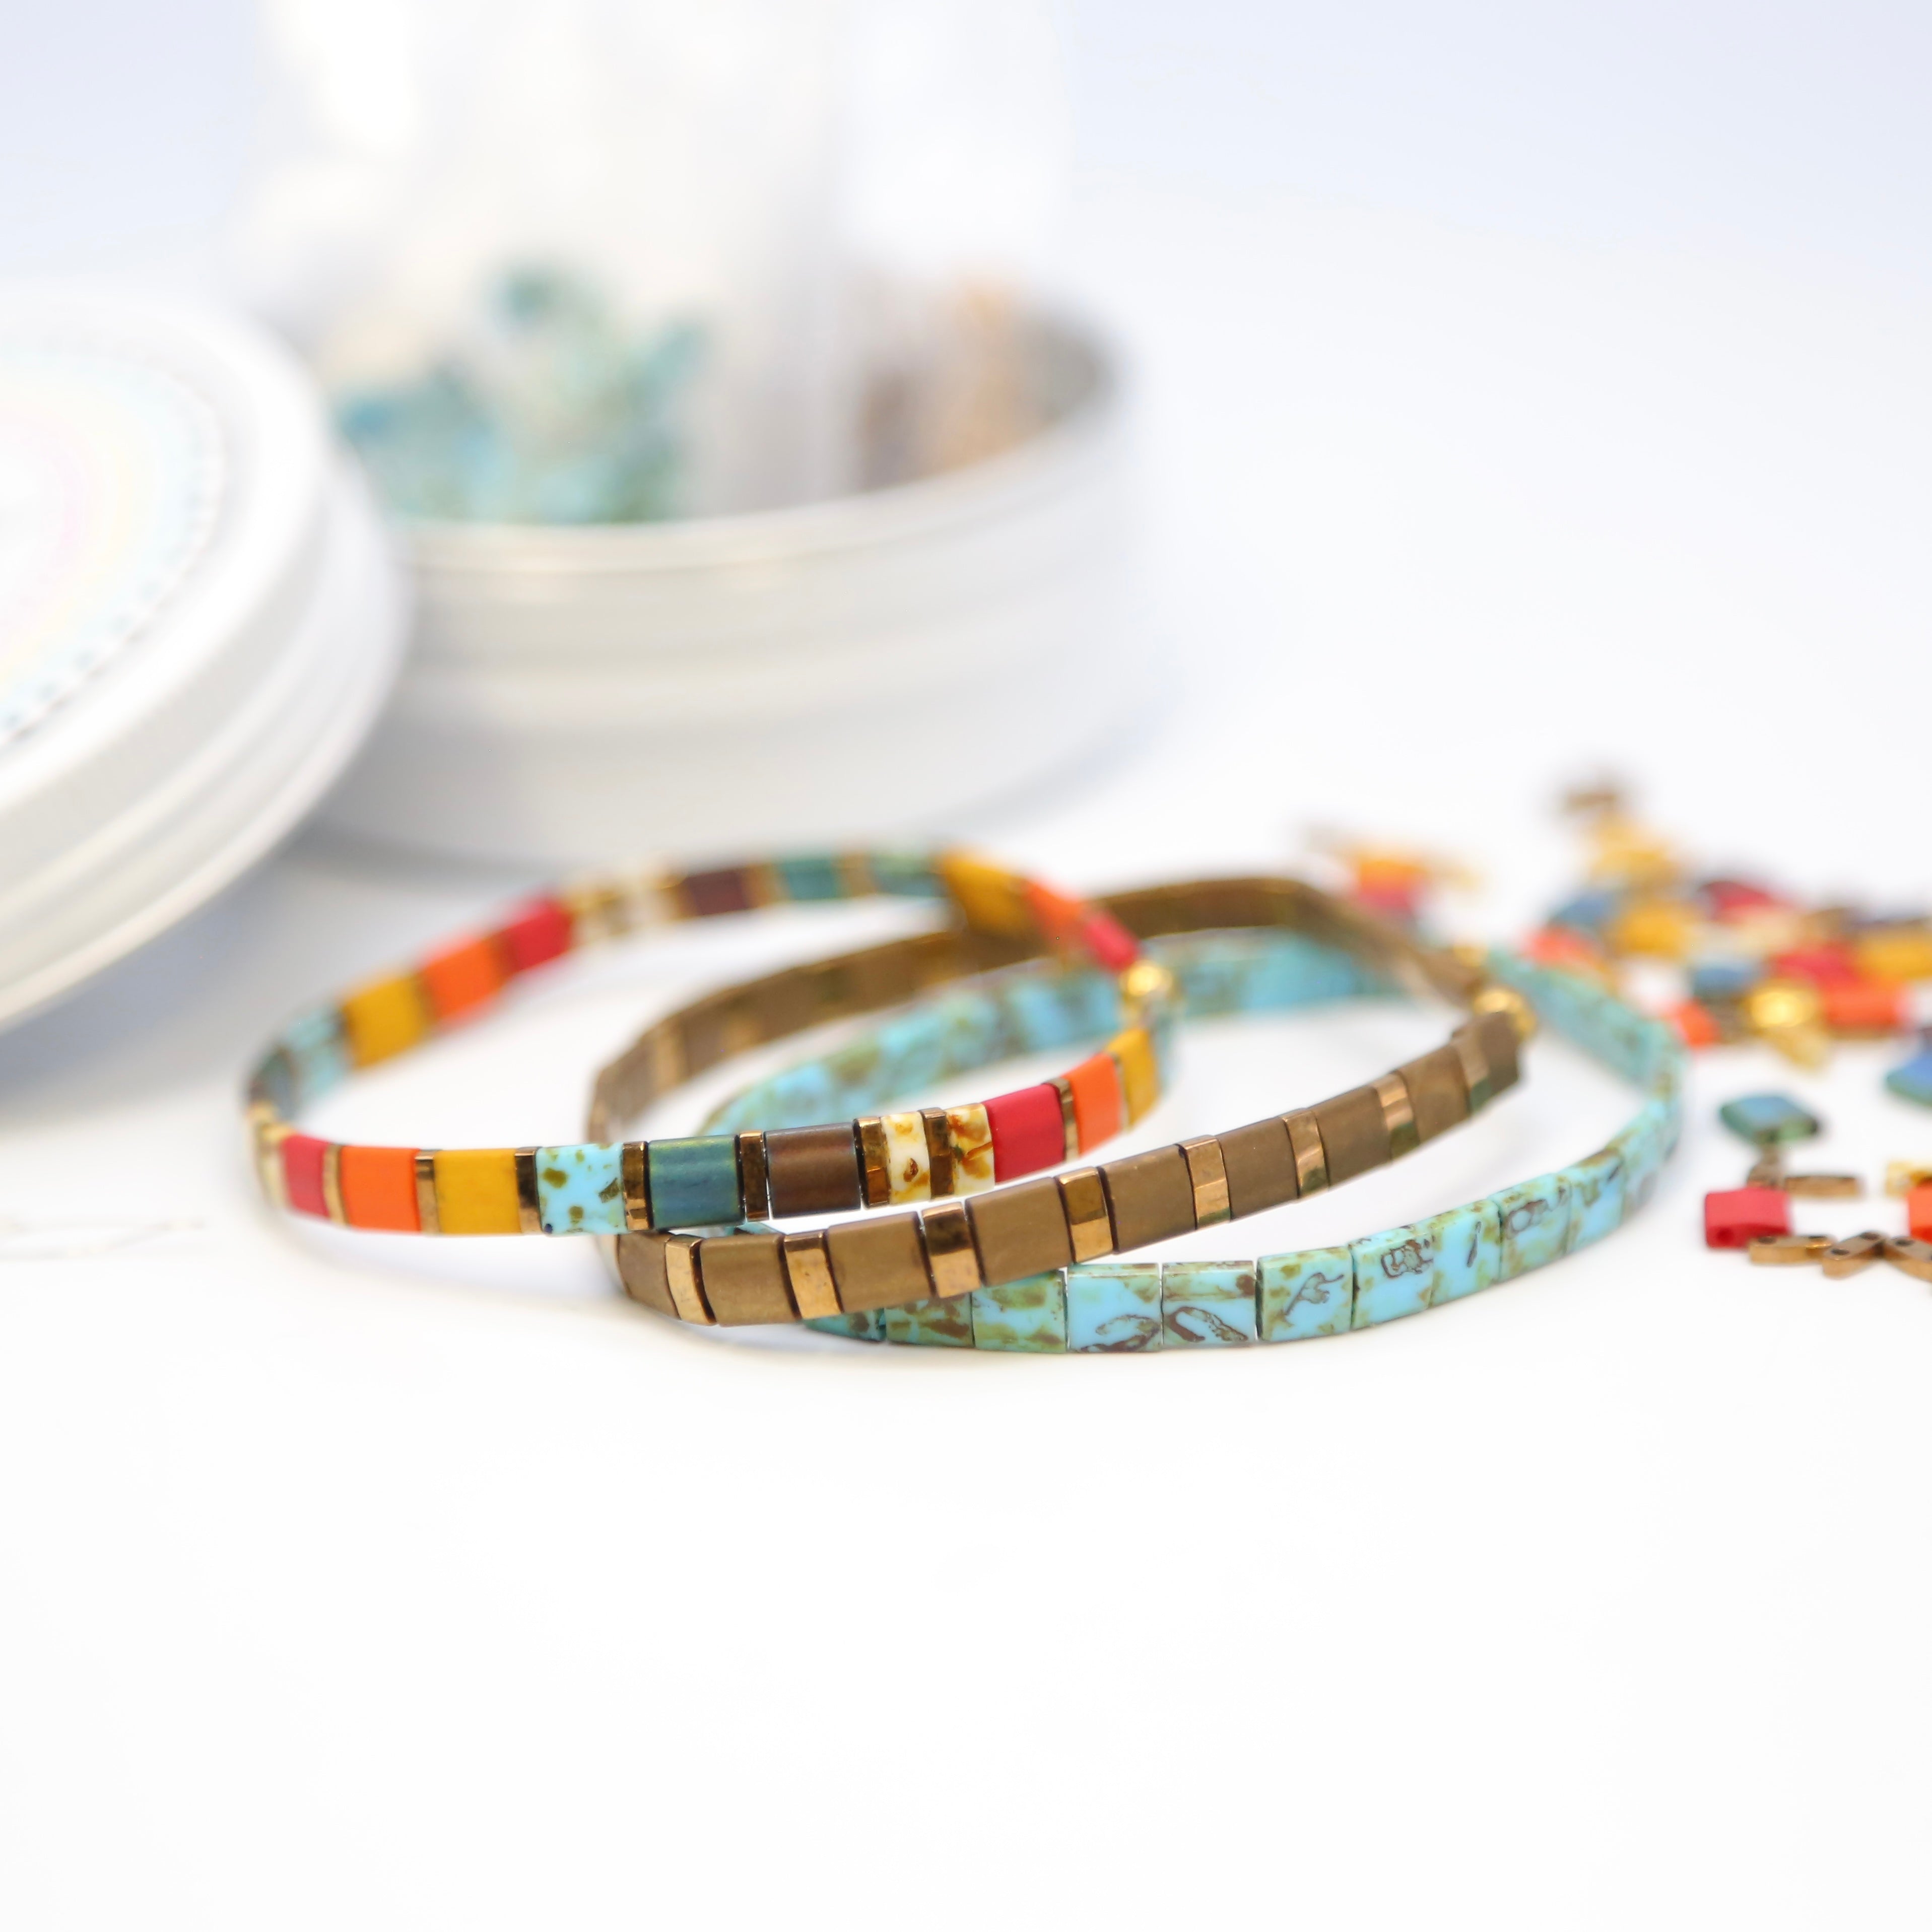 STAINED GLASS - Bracelet Making Kit - DIY 3 Bracelets – Mack & Rex